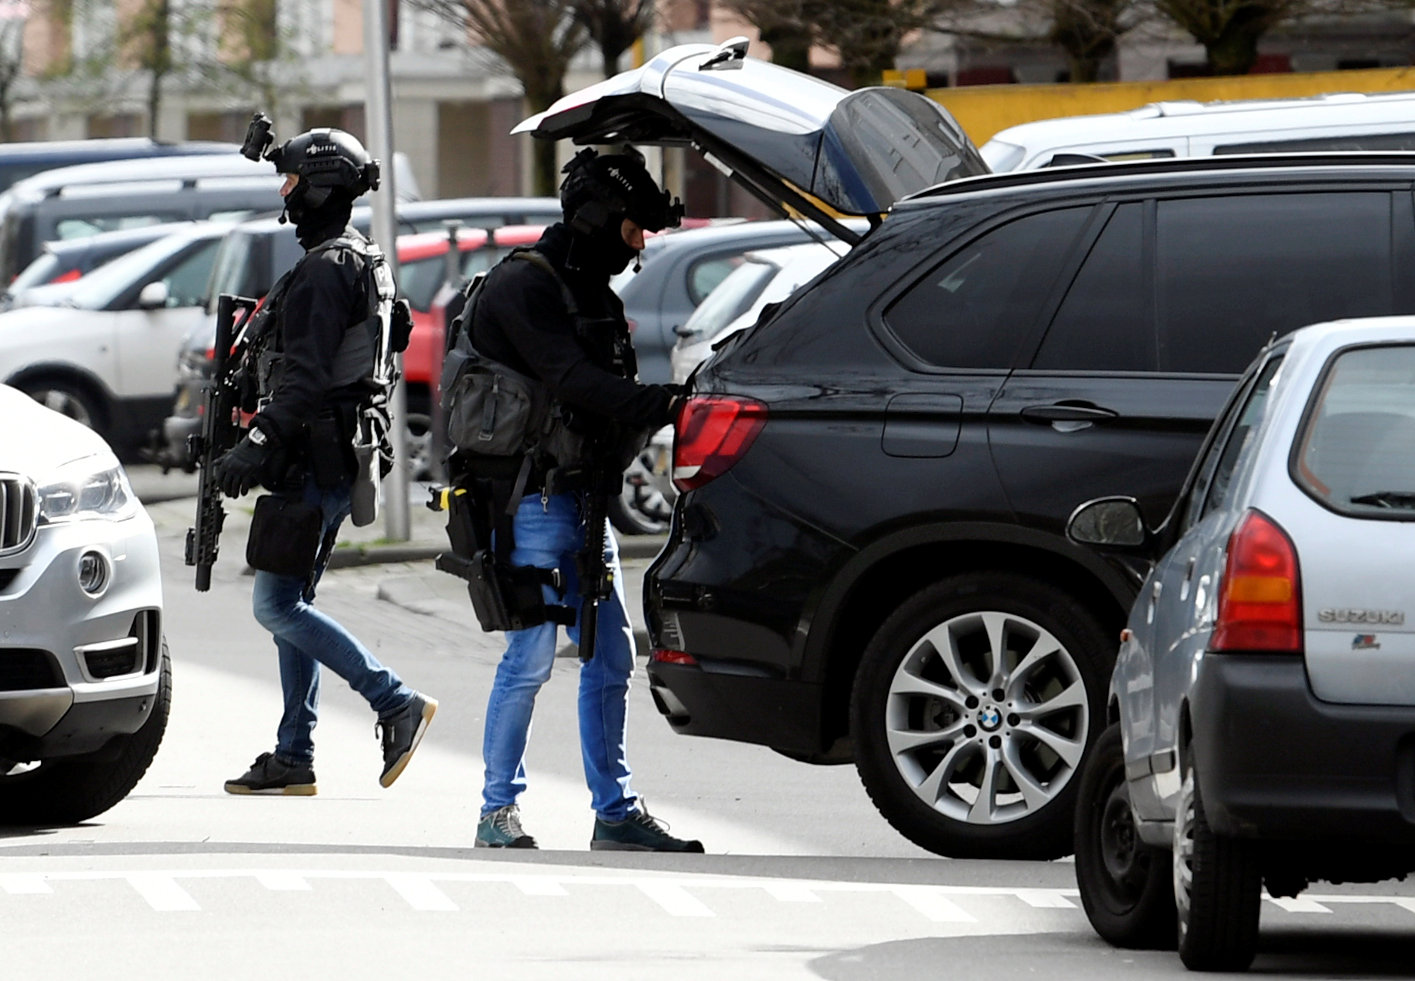 Buscan a varios huidos en relación con posible acto terrorista en Utrecht